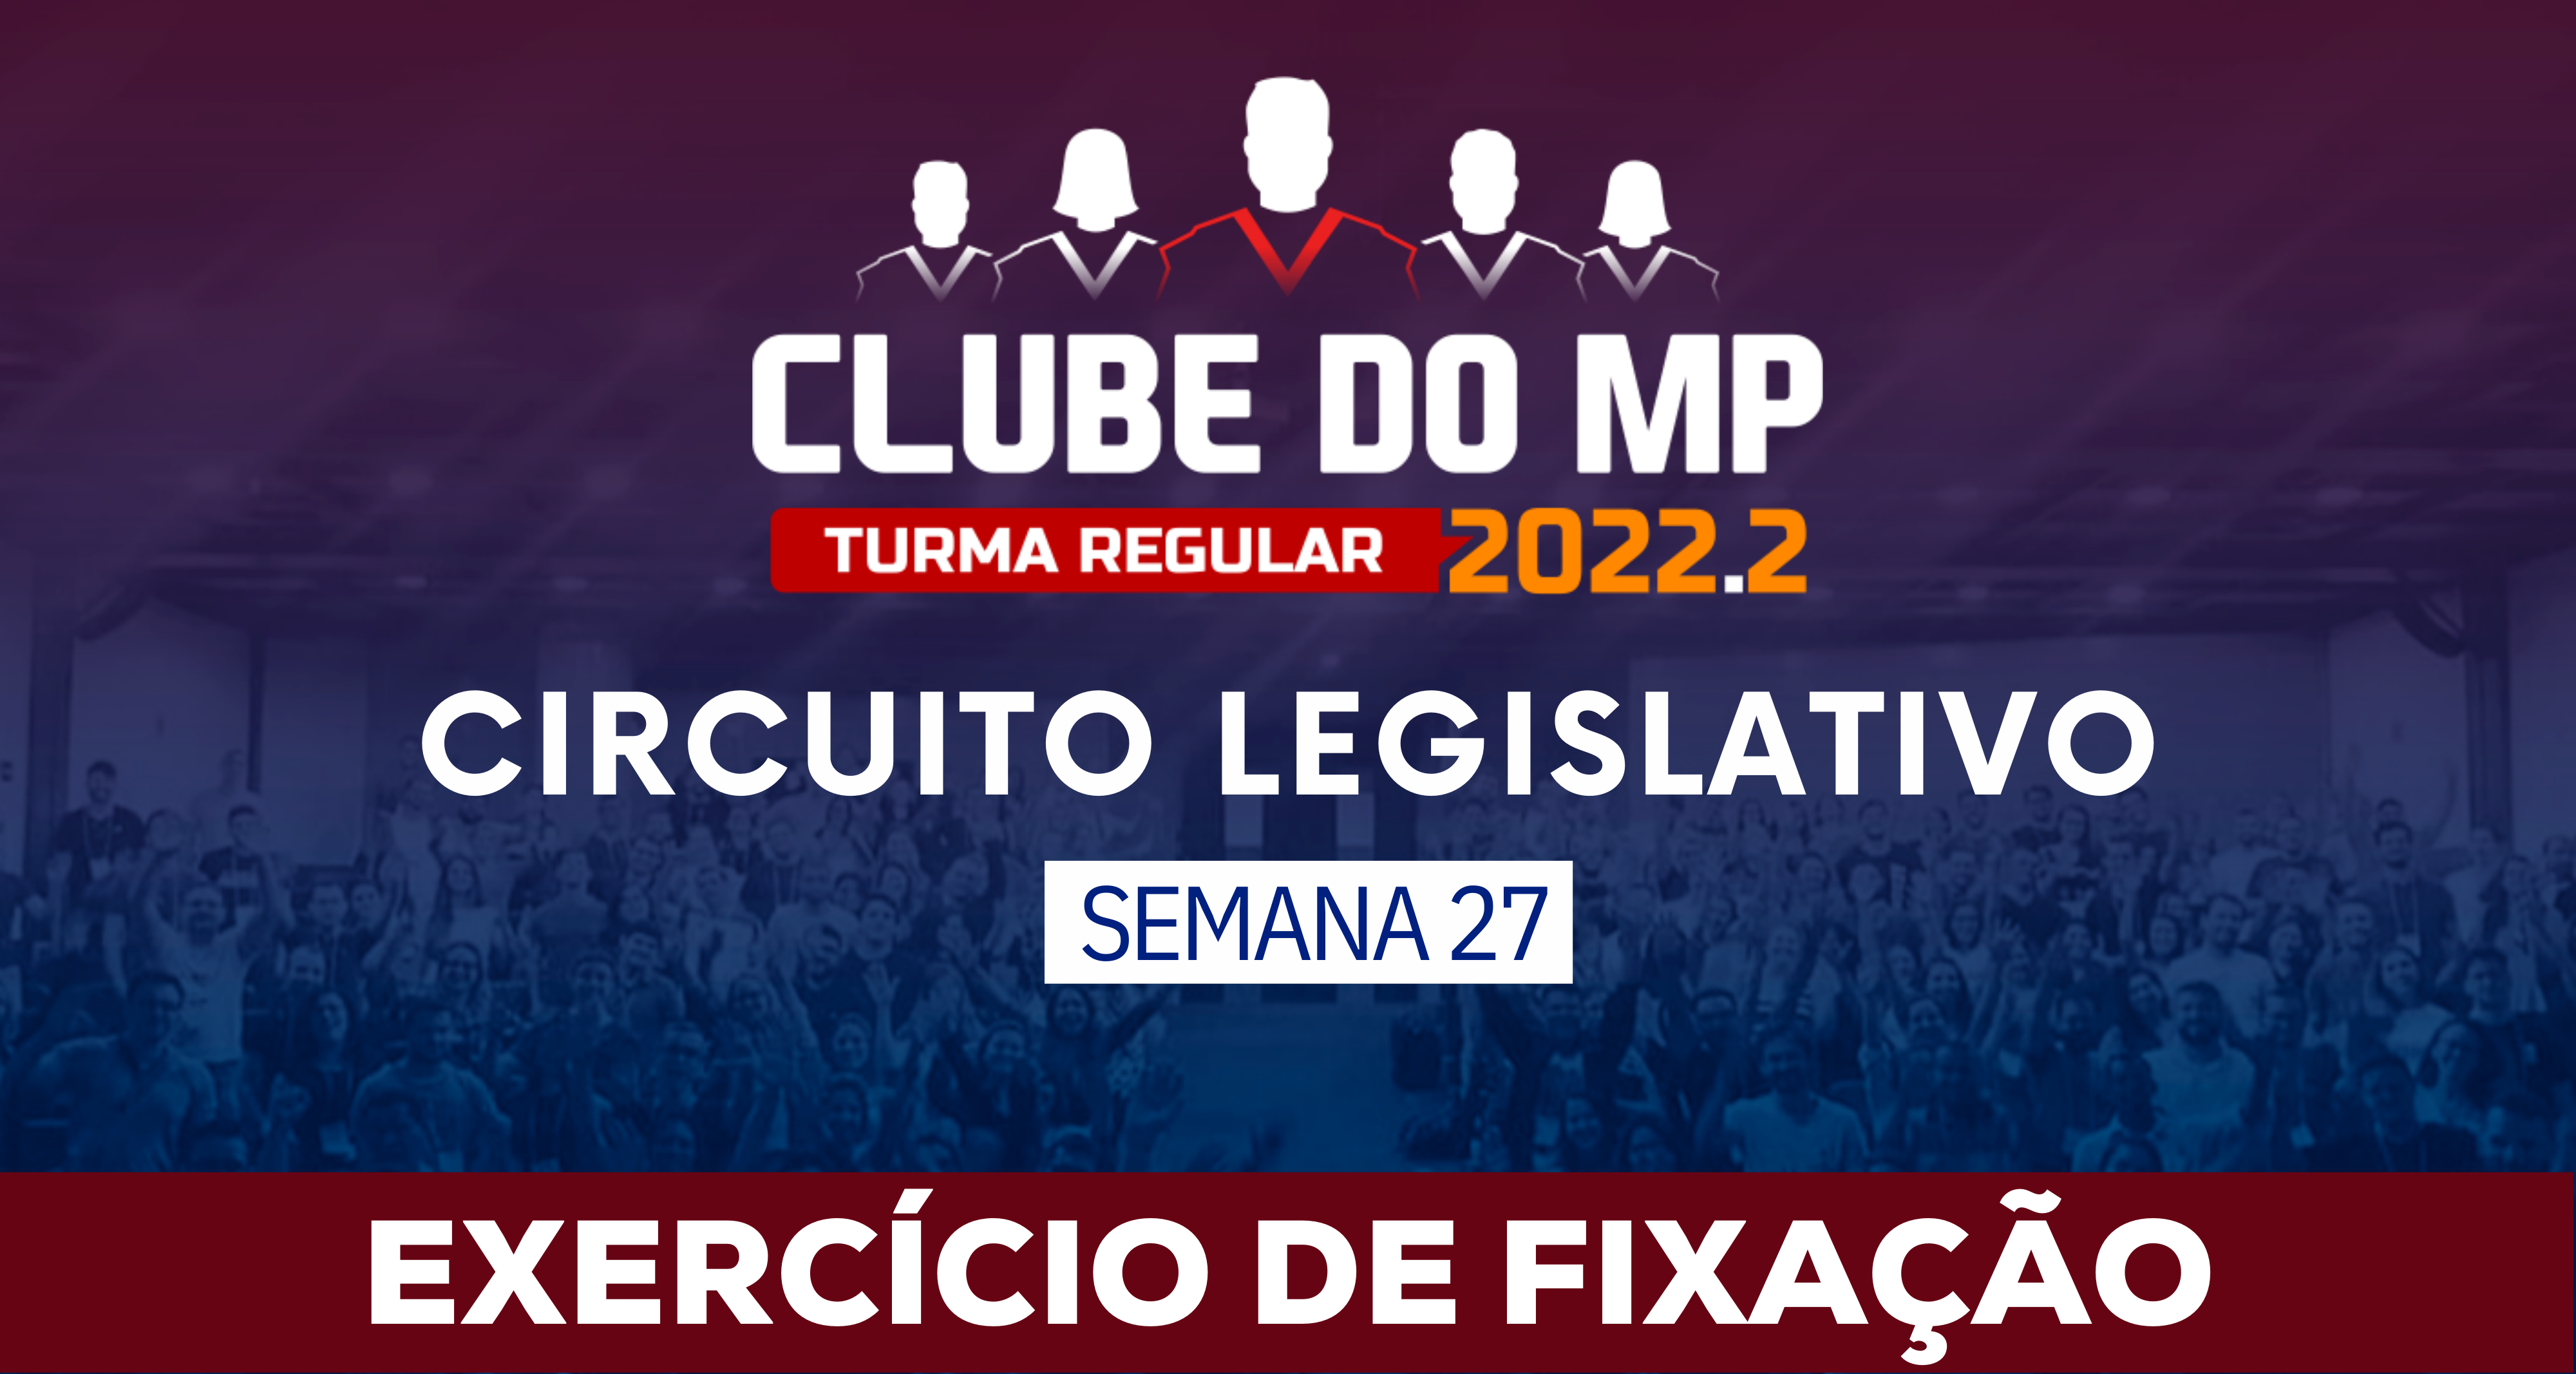 Circuito Legislativo 2022.2 (Clube do MP - Semana 27)